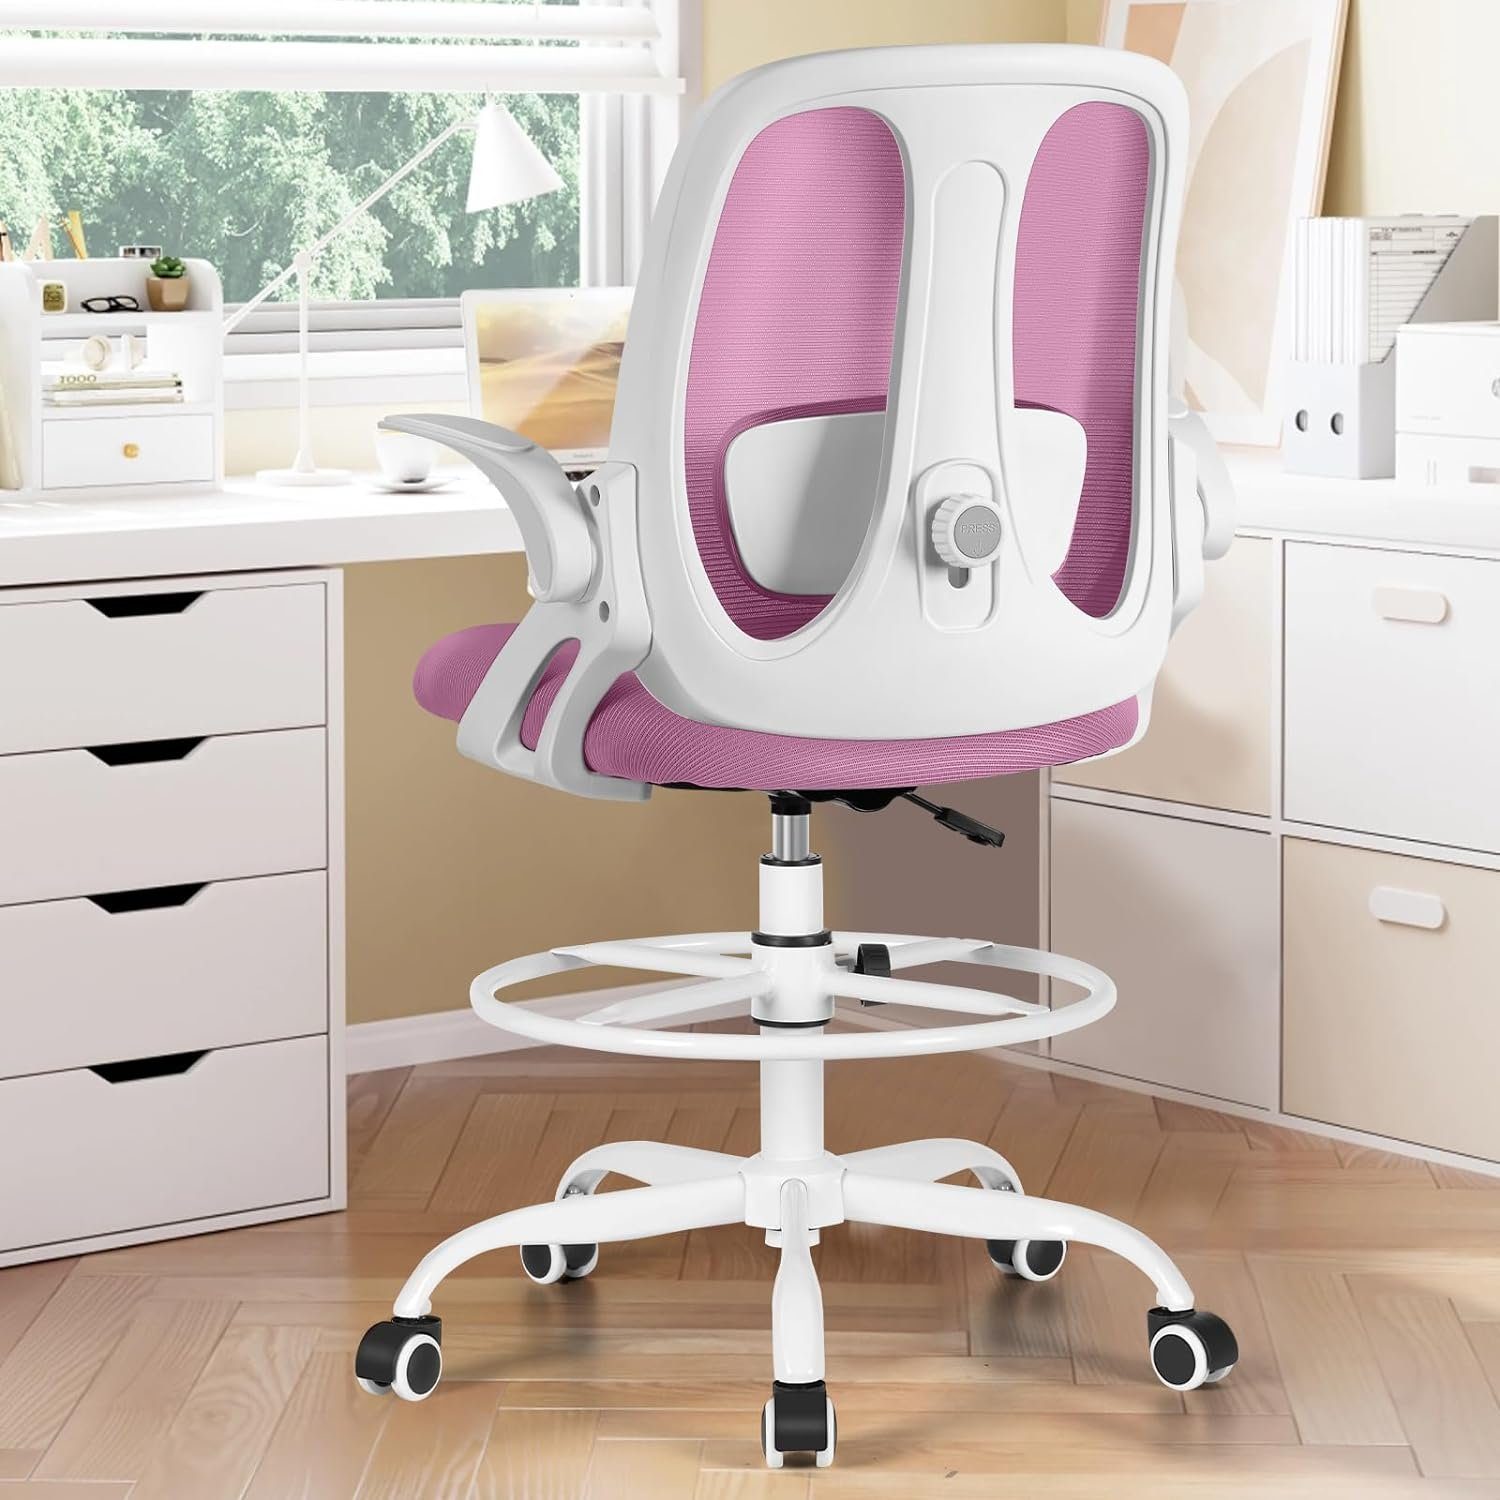 Razzor Bürostuhl (360° Drehstuhl mit Fußstütze, Hoher Arbeitsstuhl aus Netz für Executive-Arbeit), Büro,Schreibtischstuhl Ergonomisch Armlehnen,Atmungsaktiv bis zu 110Kg